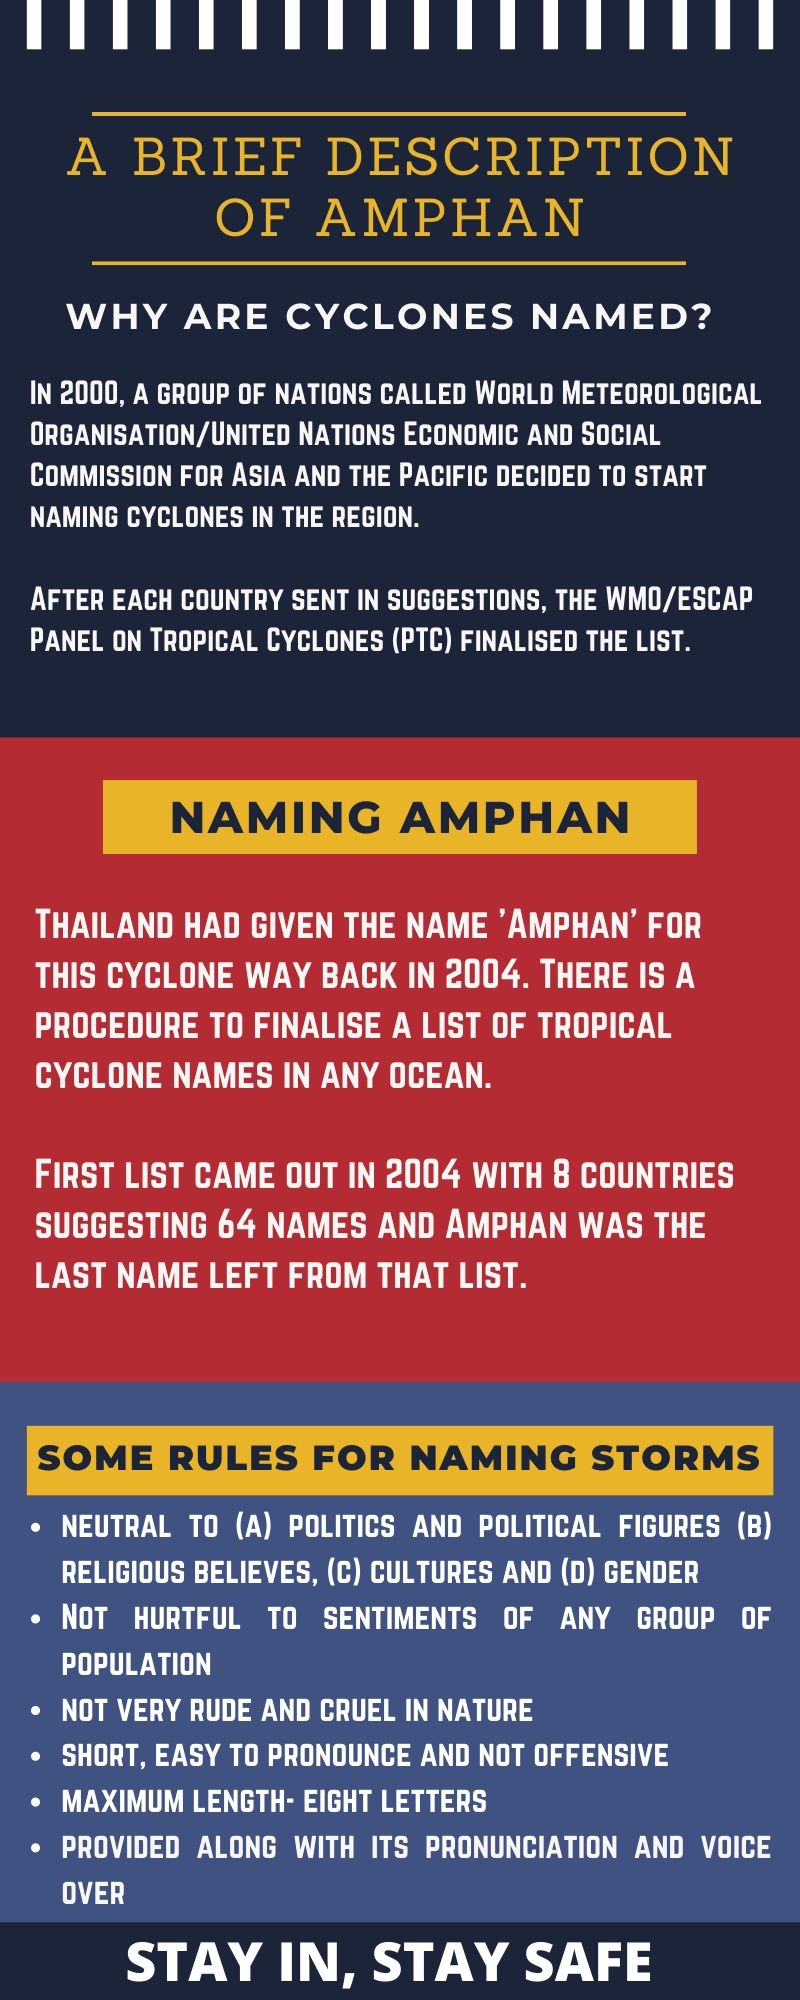 A brief description of Amphan